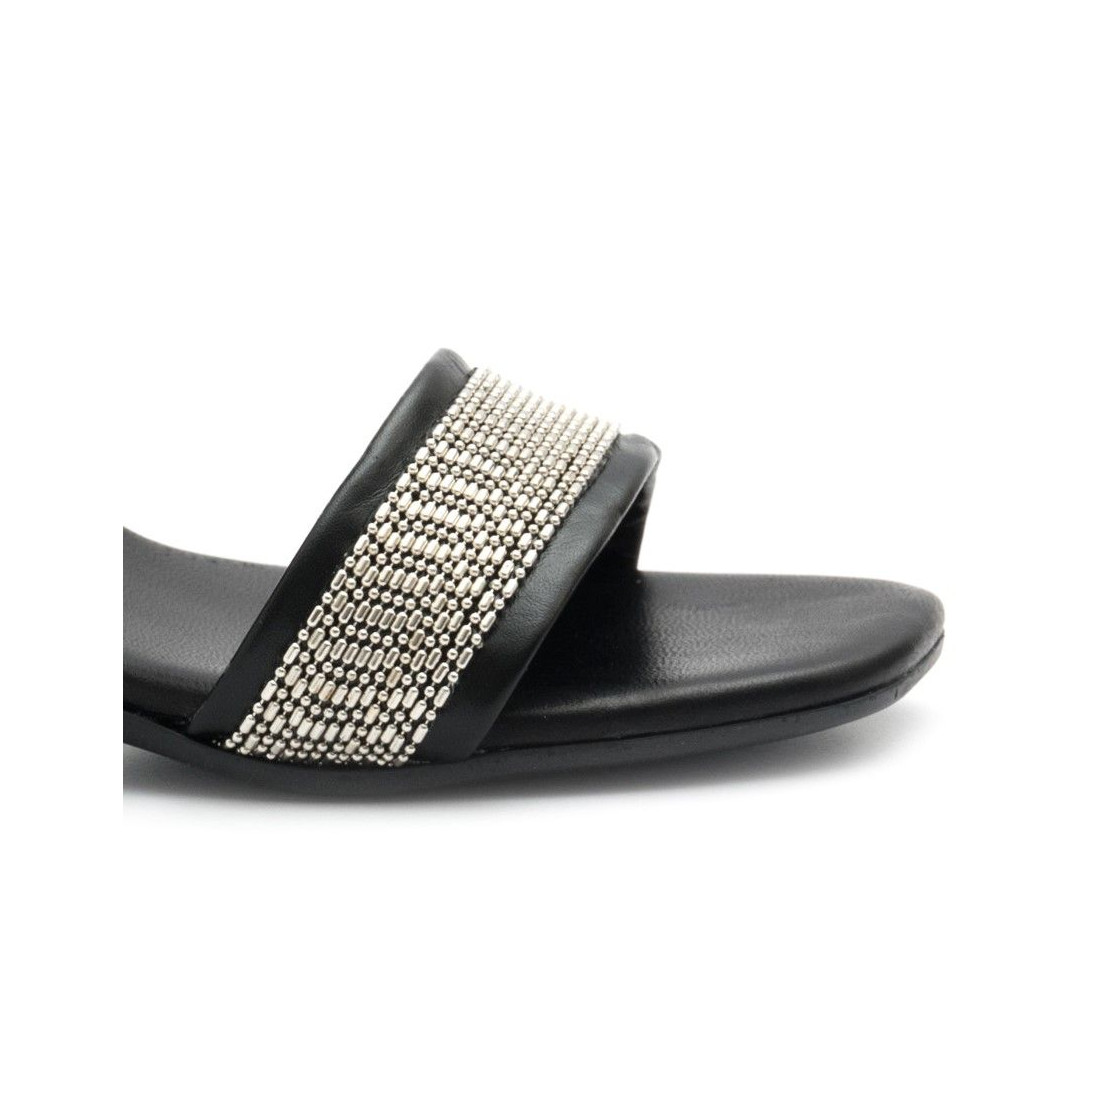 Sandalo Jemi nero con tacco alto argento specchiato